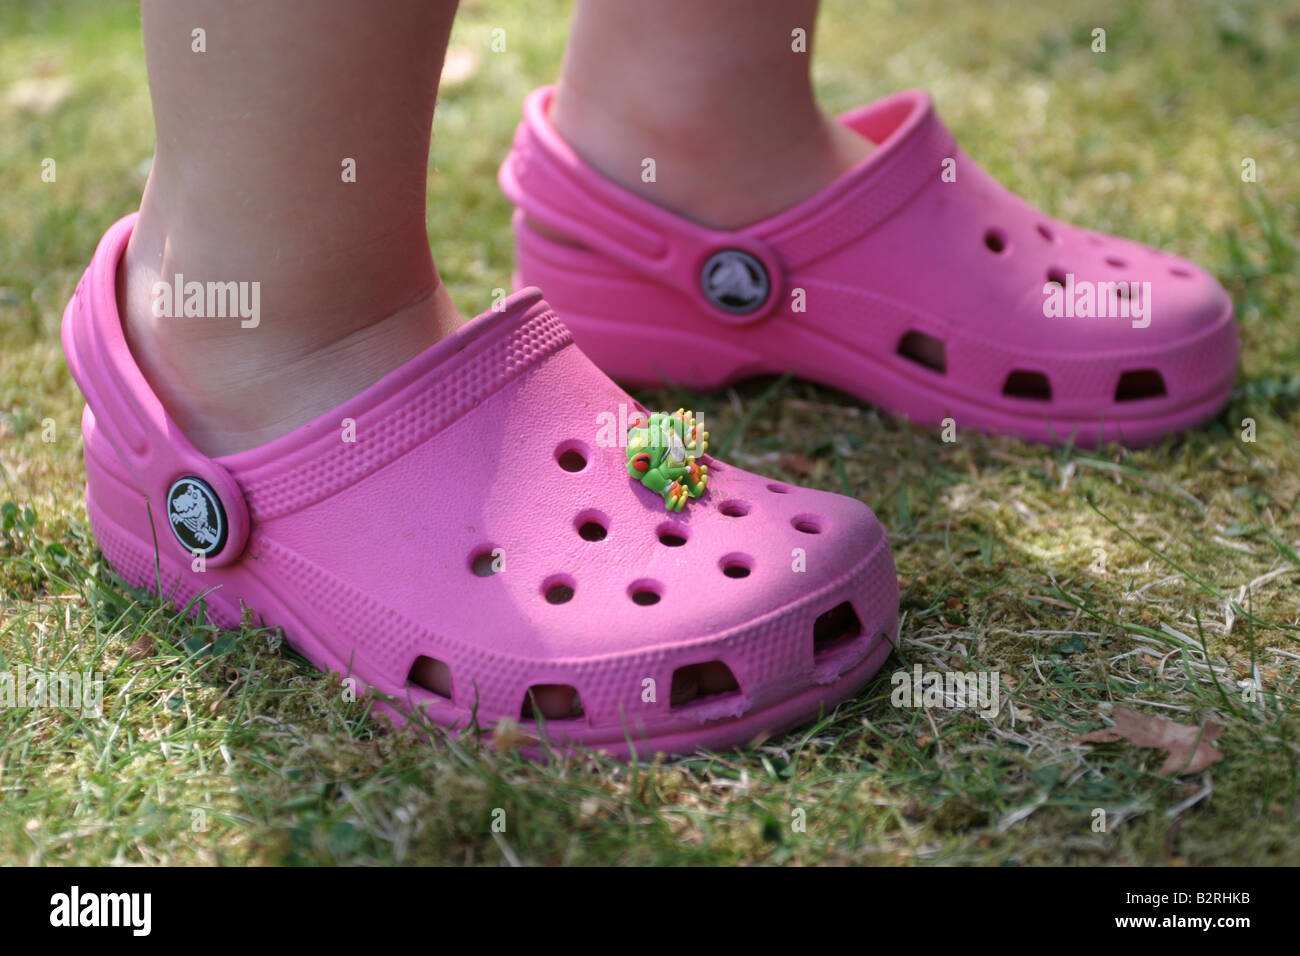 Zapatos crocs rosas fotografías imágenes alta -